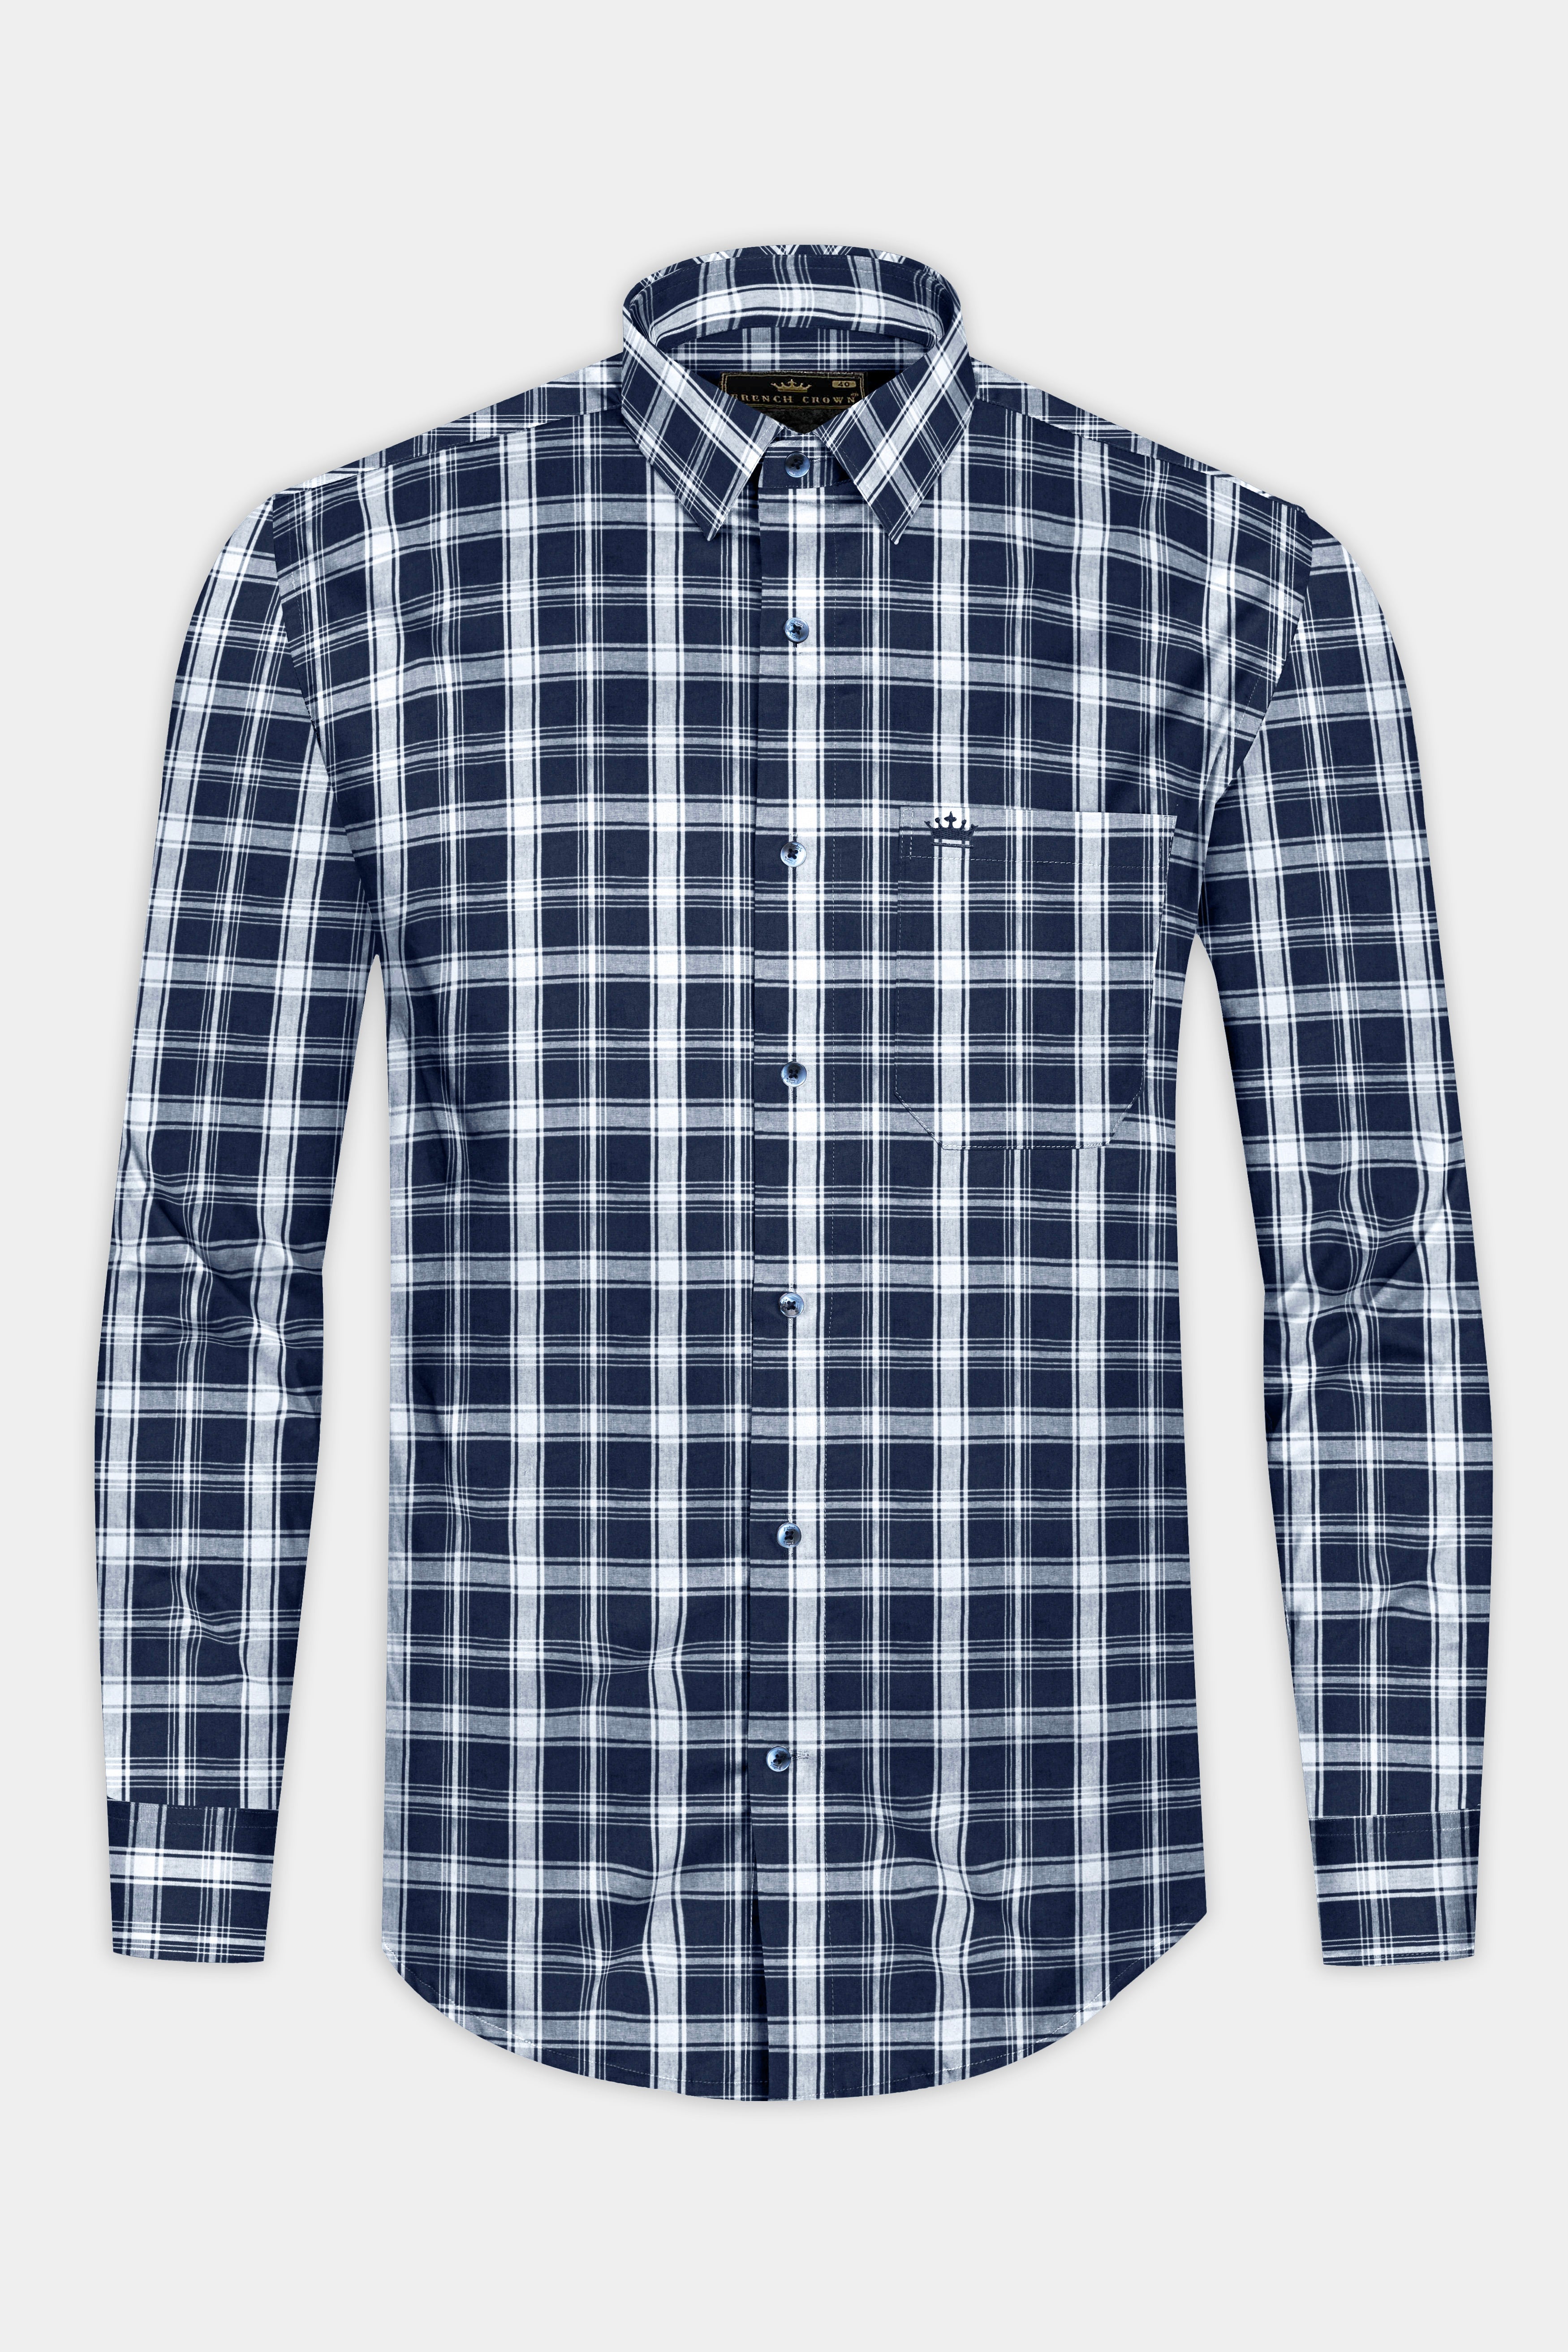 Tealish Blue and White Checks Plaid Oxford Shirt